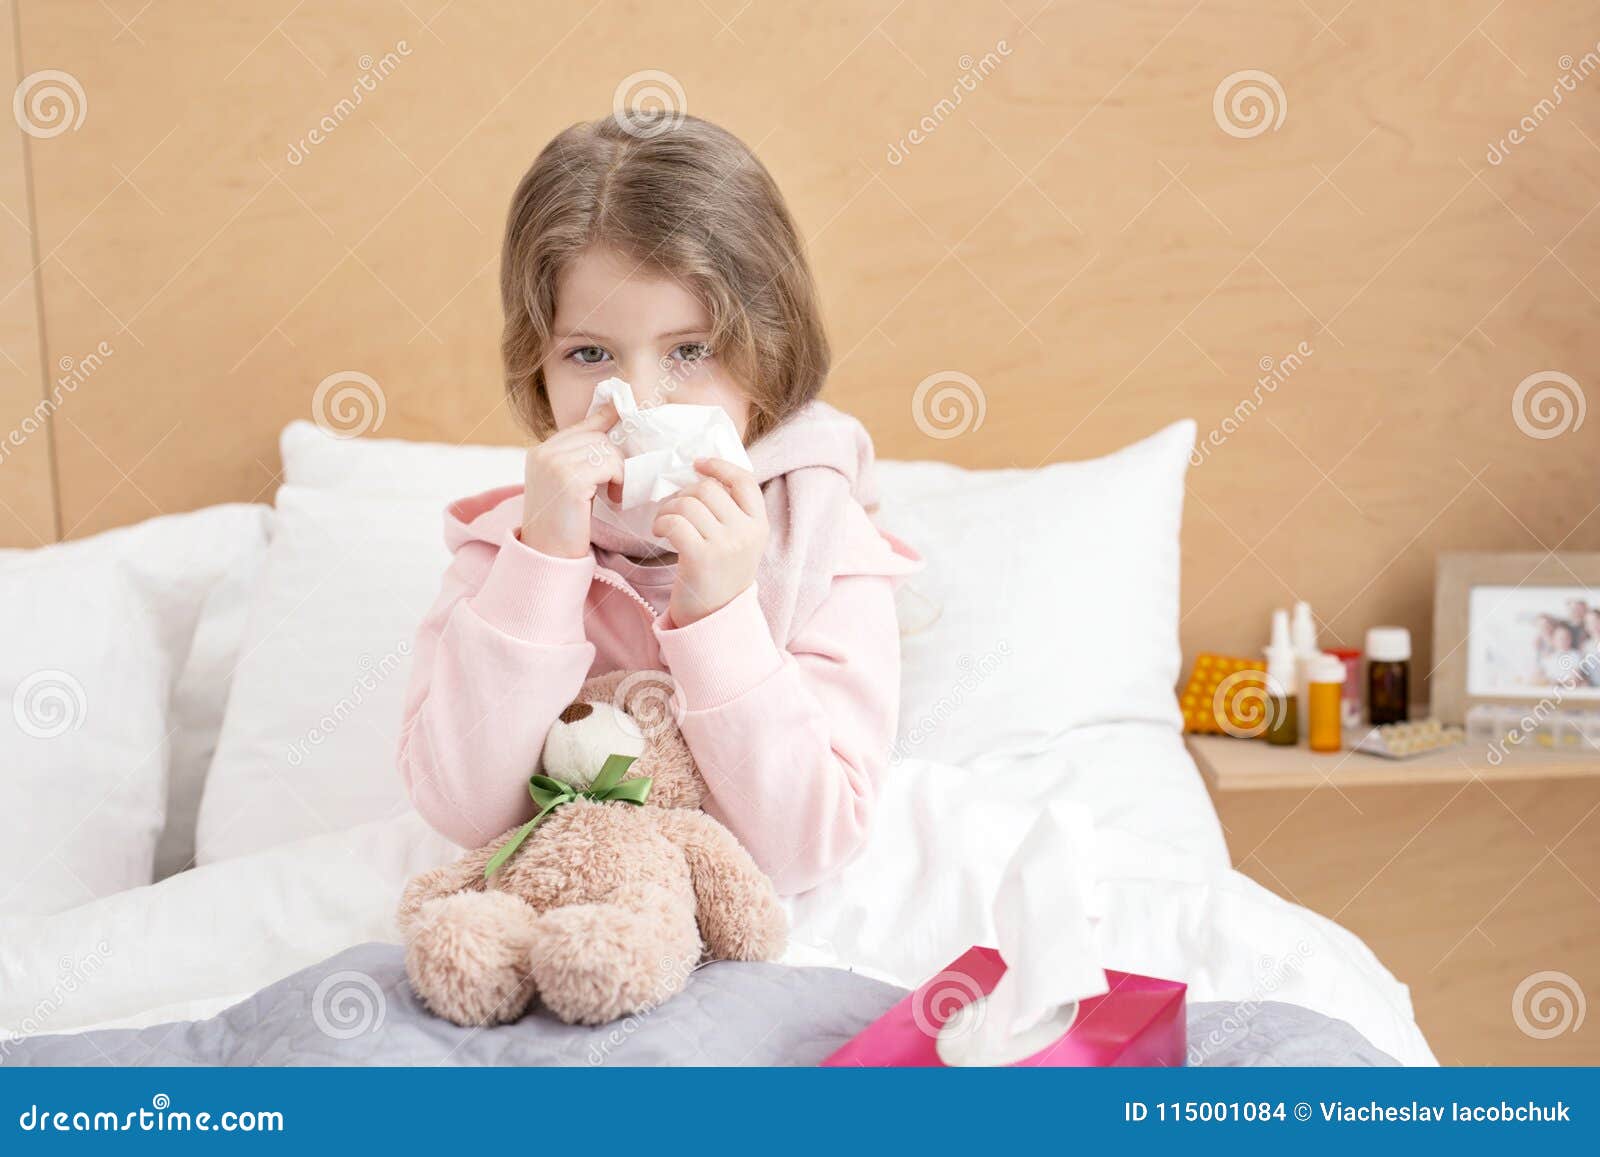 Колд дети. Девочка заболела. Девочка заболела для дошкольников. Часто болеющие дети. Простуда у девочки ребенка.